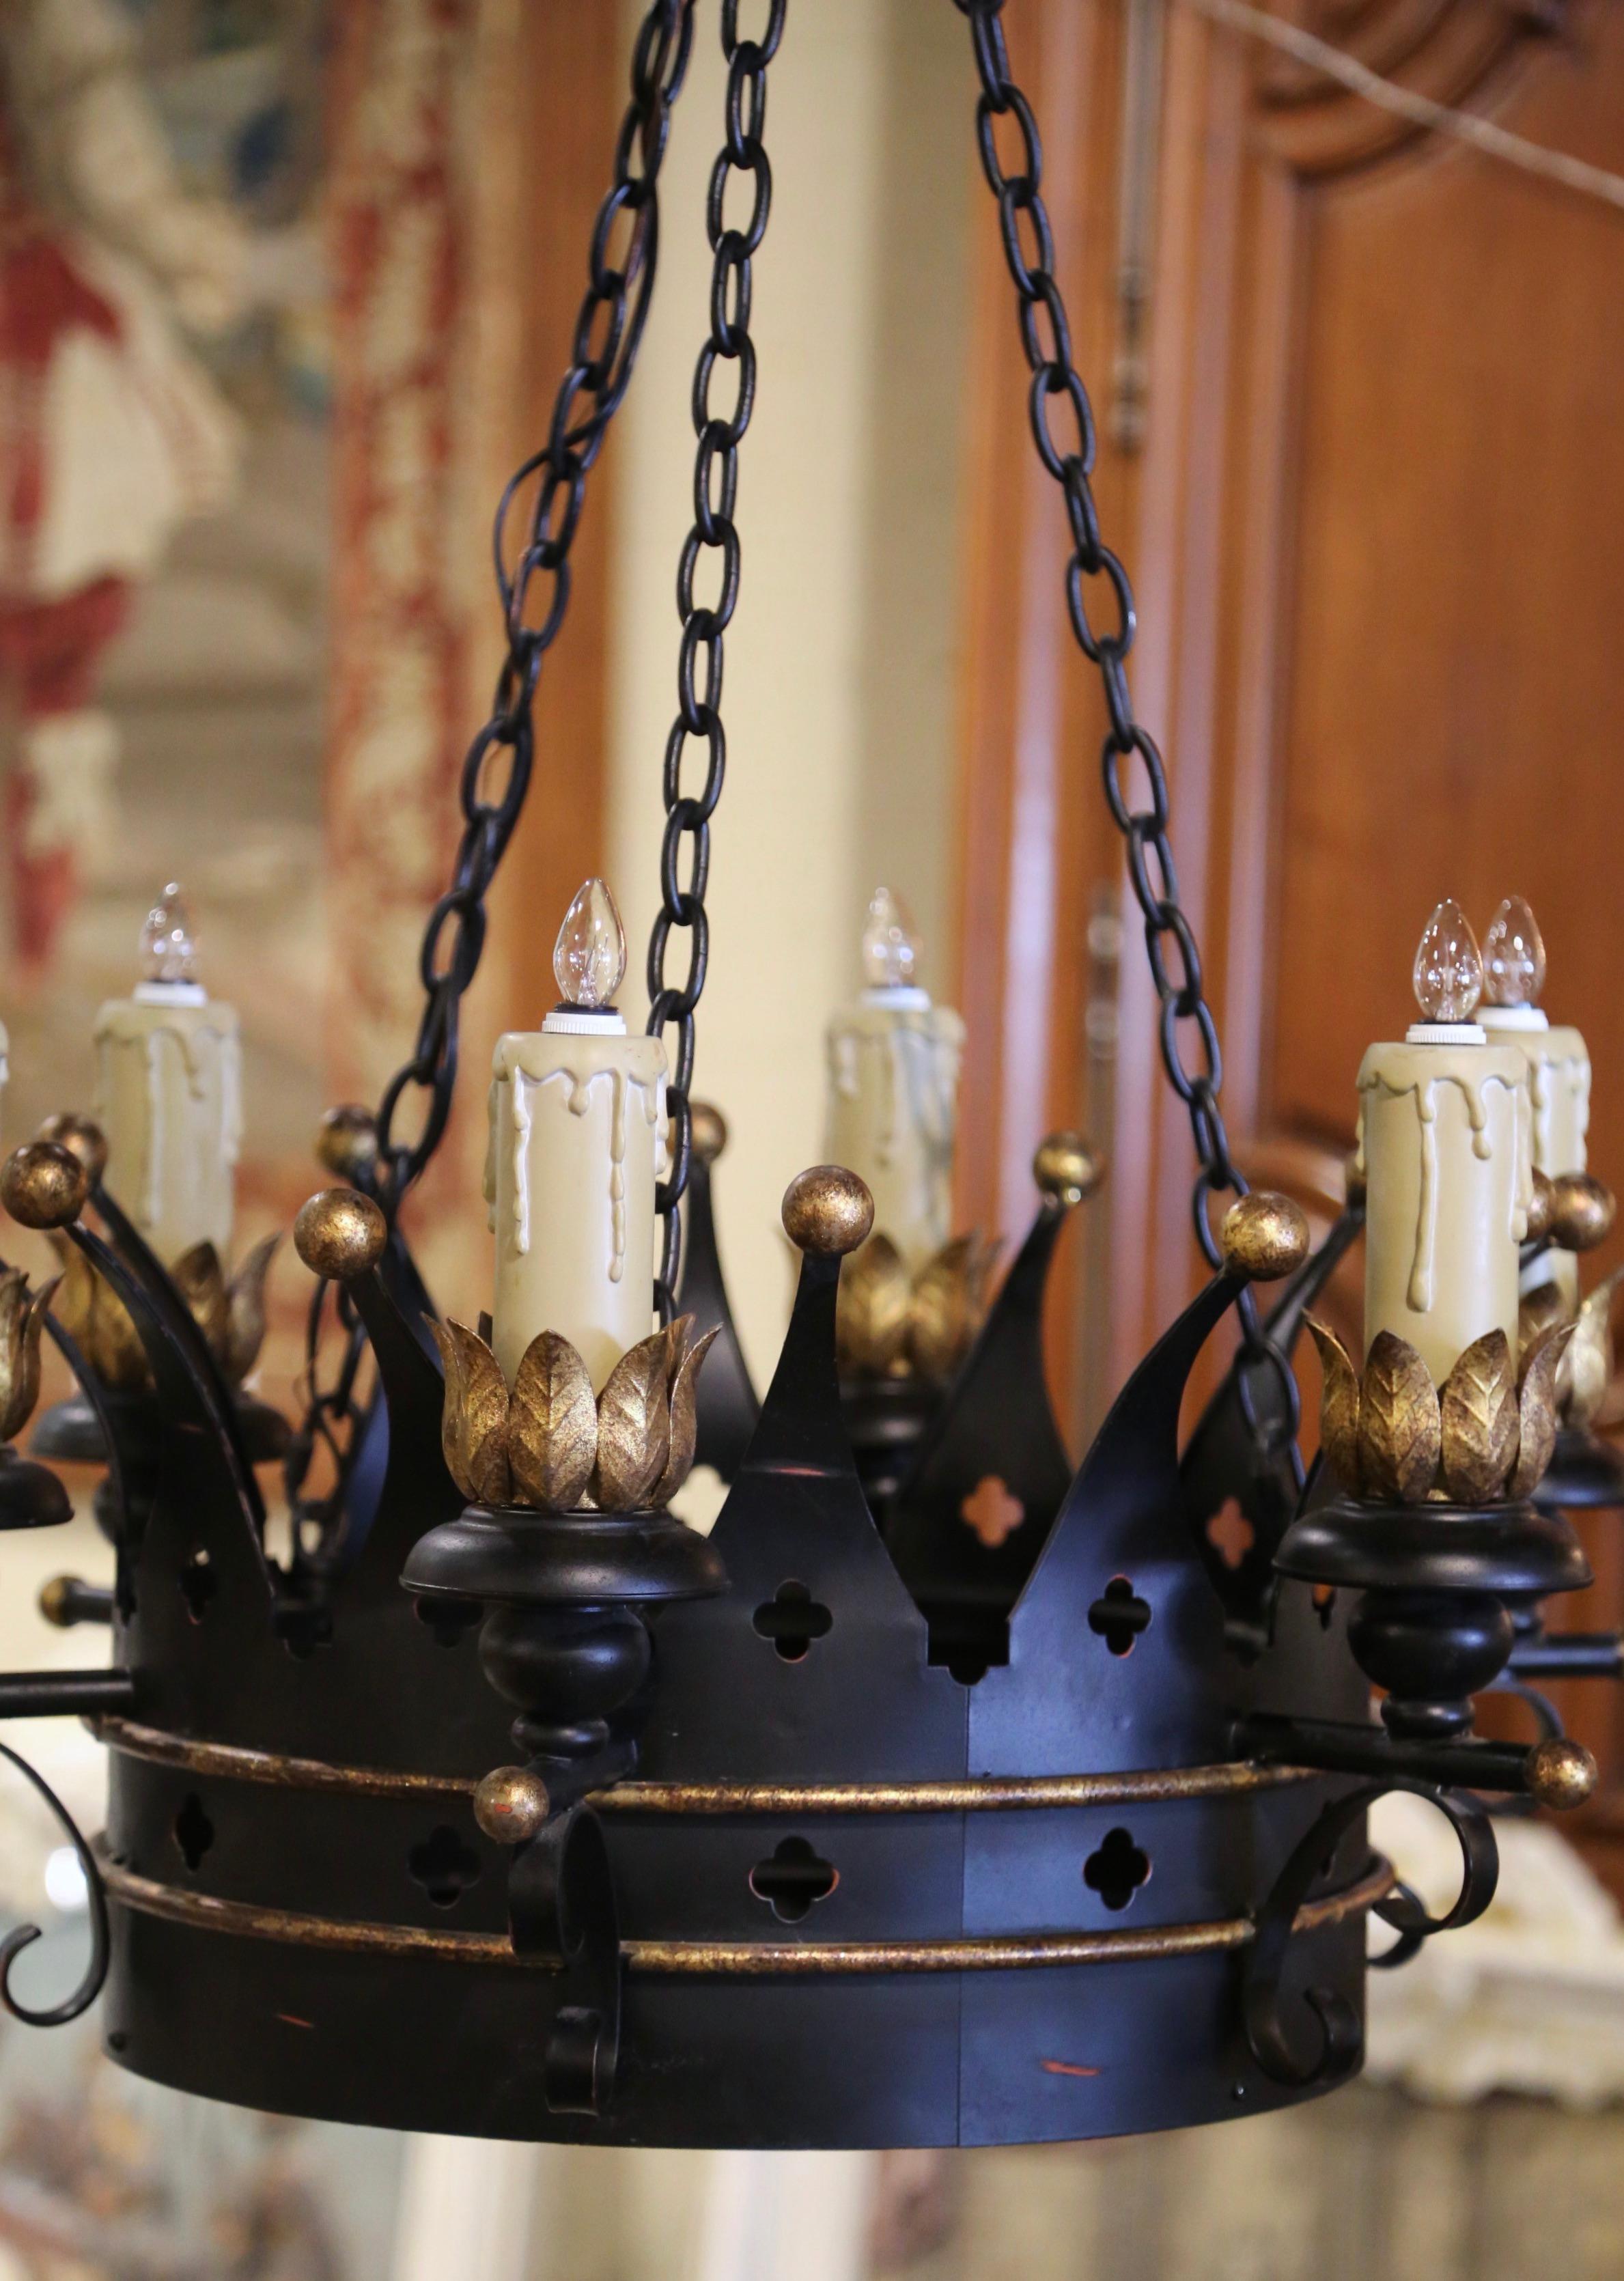 Diese komplizierte antike Eisenleuchte wurde um 1970 in Frankreich geschmiedet. Der runde gotische Kronleuchter hat eine kreisförmige, gehämmerte Krone, die rundherum mit Riegeln verziert ist und auf dem Coronet mit zahlreichen Zacken verziert ist.